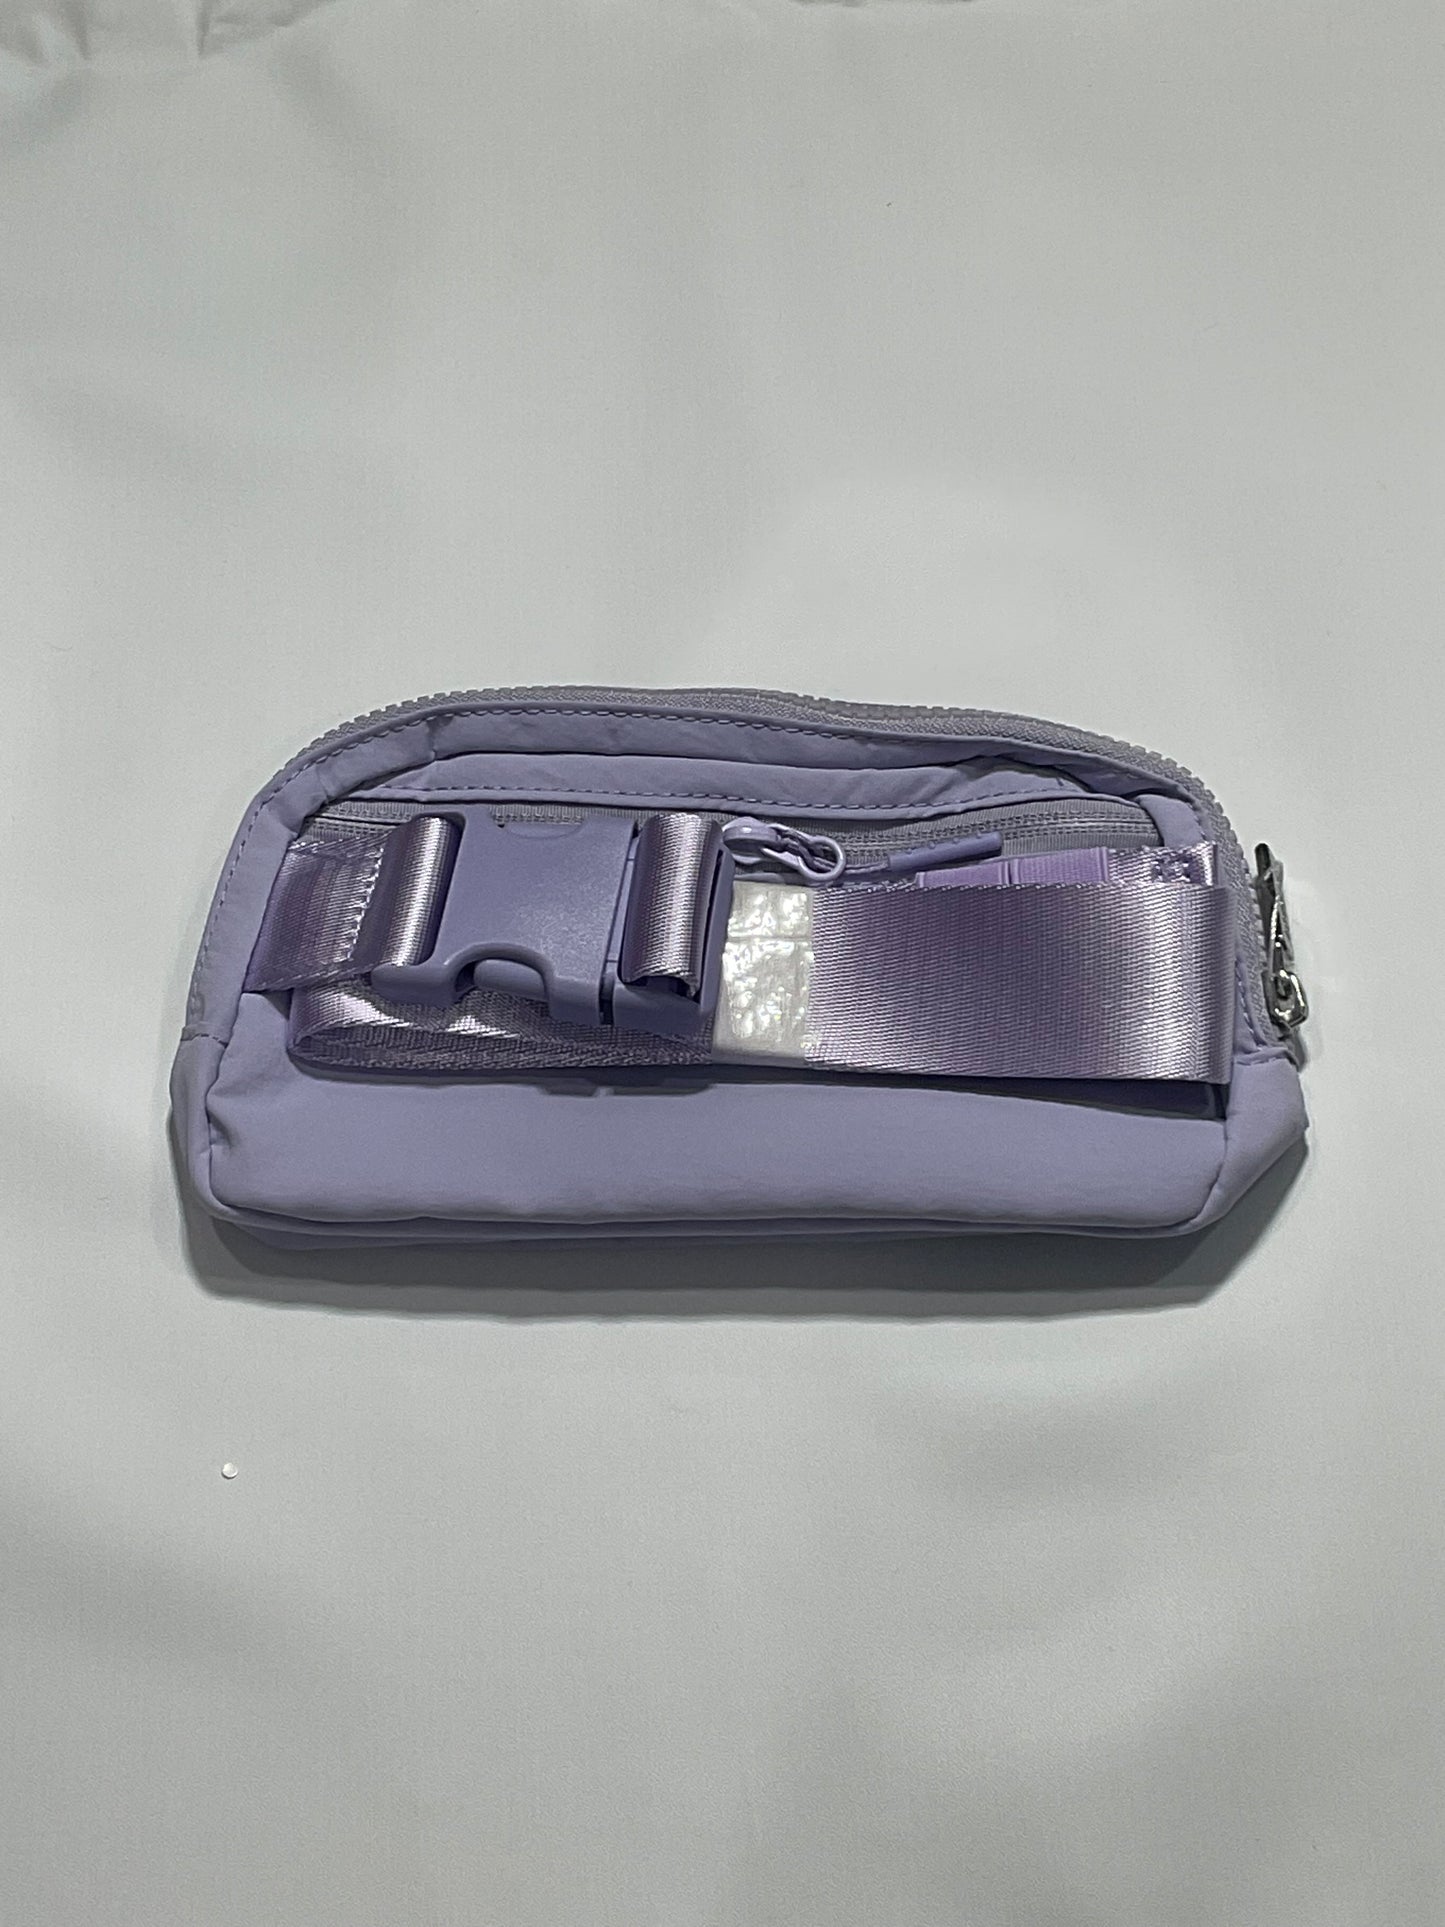 Lululemon Everywhere Belt Bag 1L - Light Purple